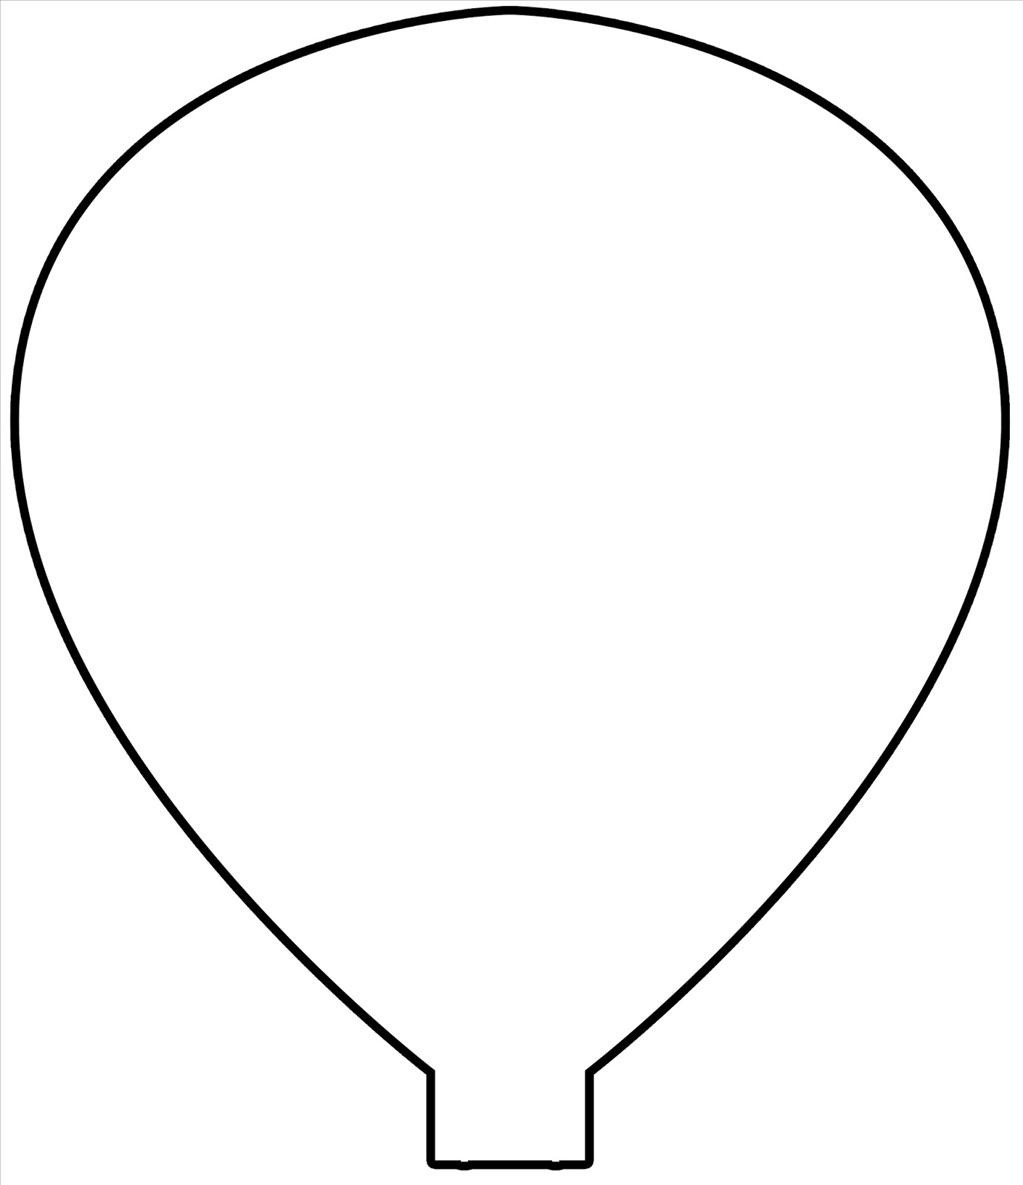 Printable Cut Out Hot Air Balloon Template